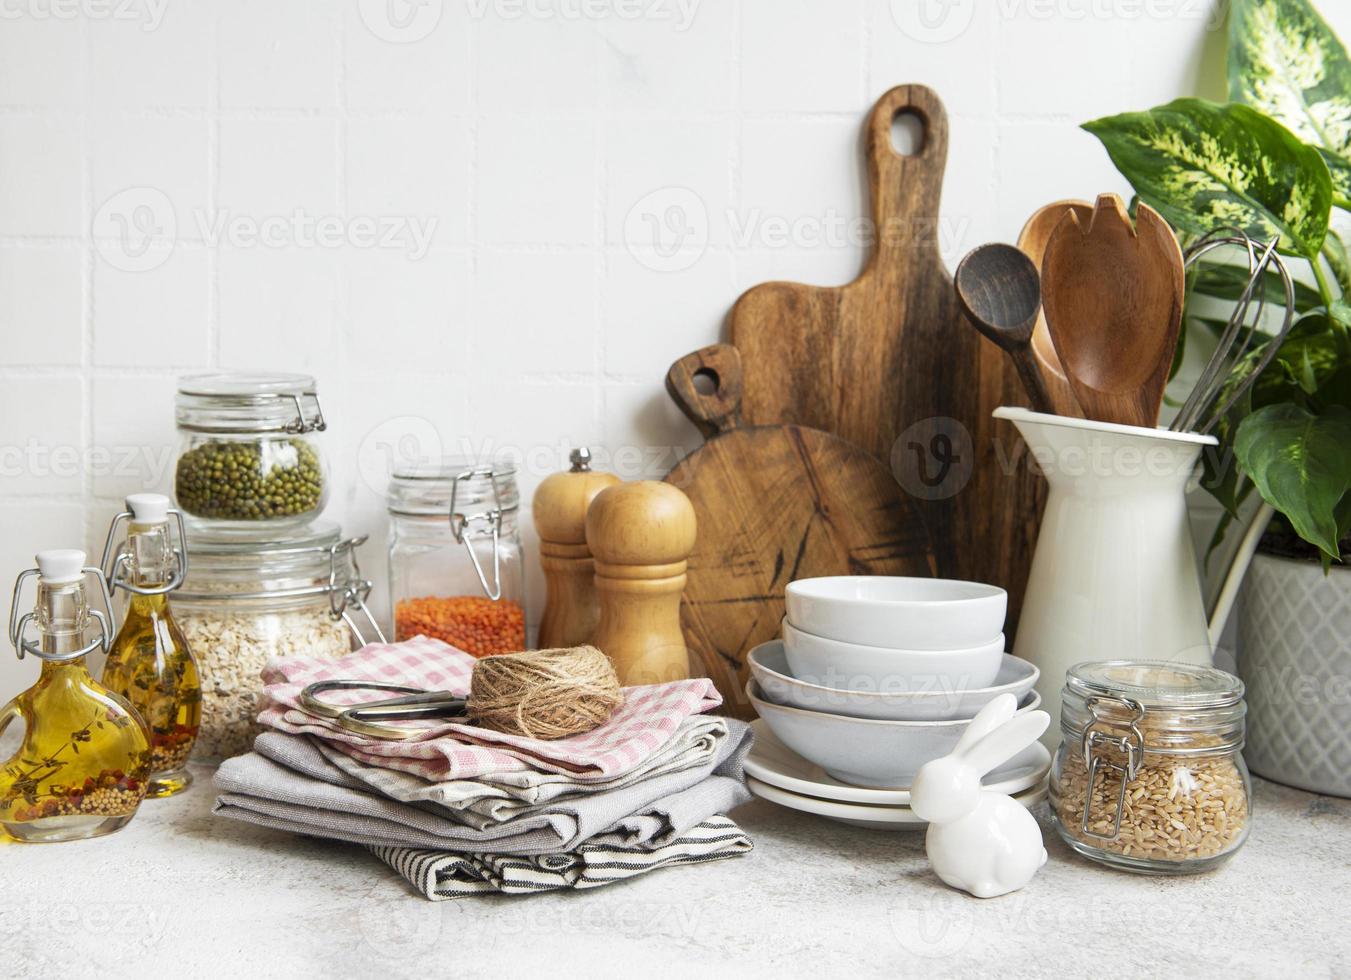 utensili da cucina, utensili e stoviglie sul muro di piastrelle bianche di sfondo. foto